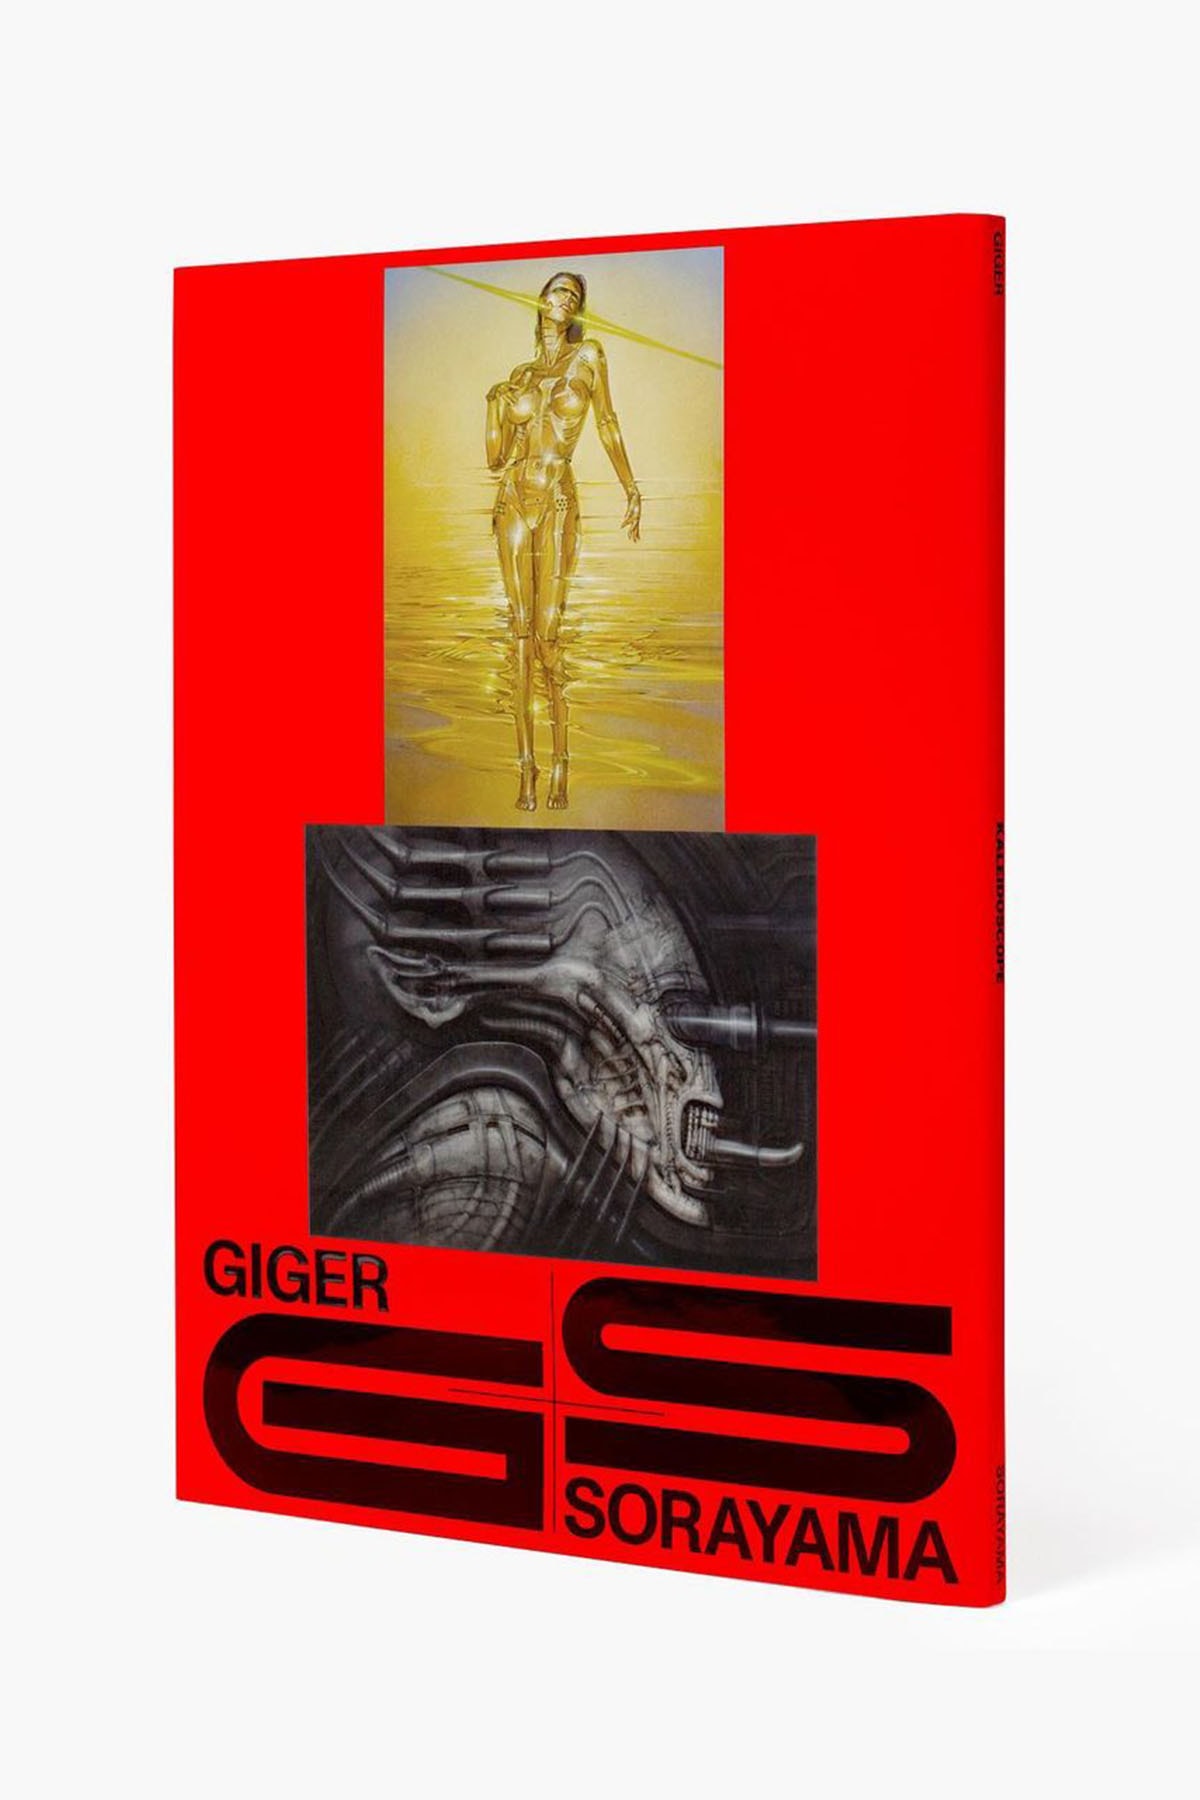 空山基 x H.R. Giger 再版藝術書冊《Giger Sorayama》推出全新紅色版本